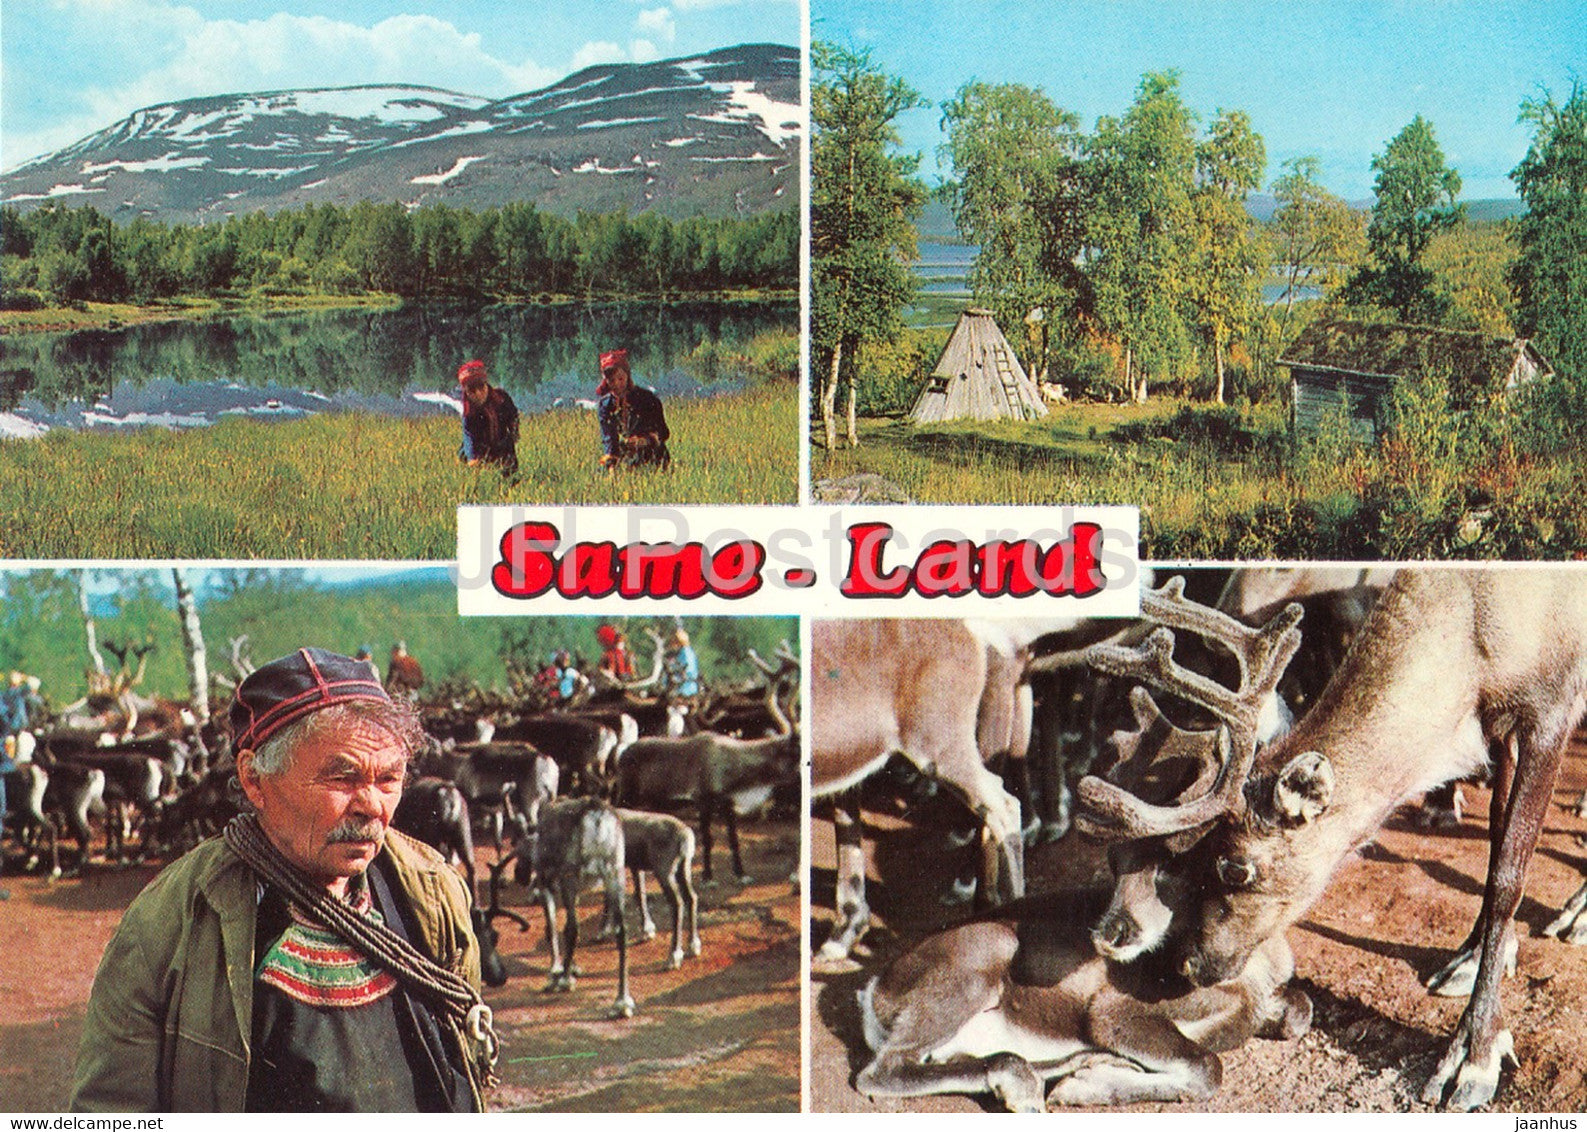 Same Land - reindeer - animals - 2169 - Sweden - unused - JH Postcards